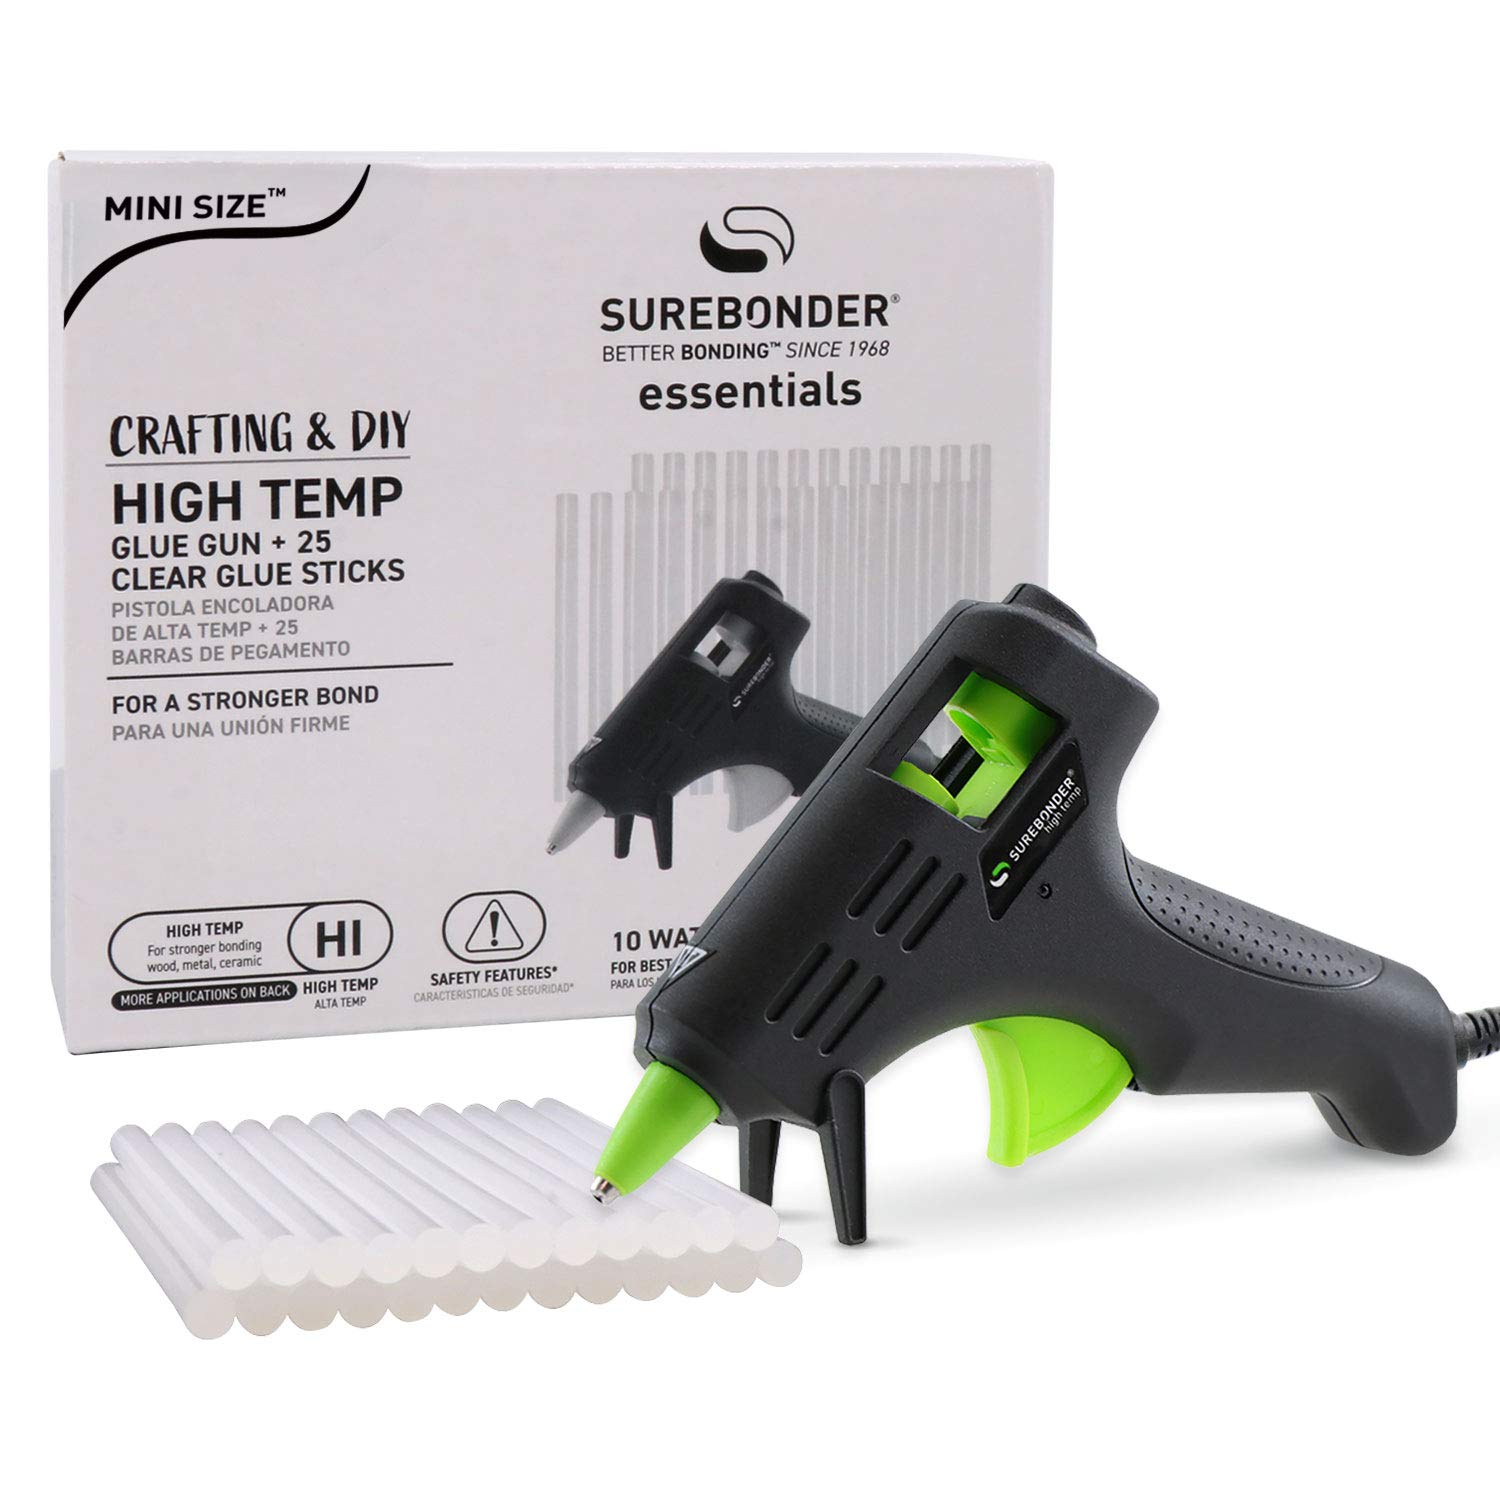 Hot Glue Gun, Surebonder Mini Size 10W High Temperature Glue Gun Kit with 25 Glue Sticks